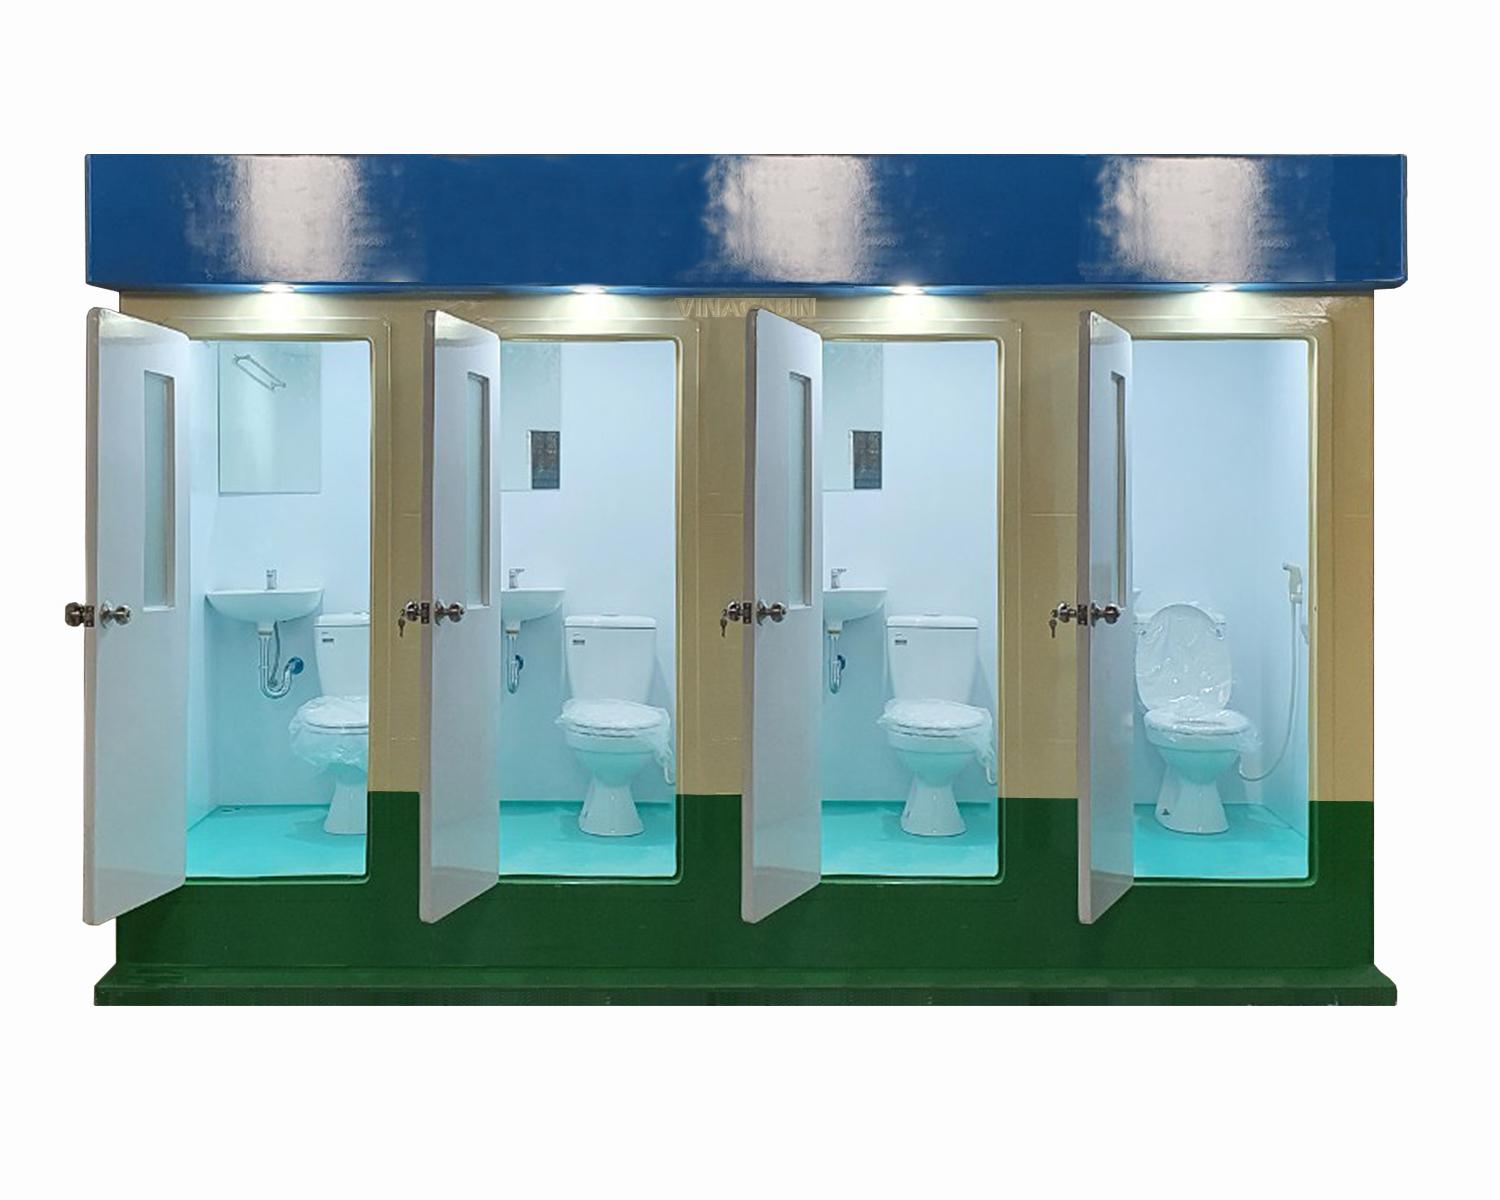 Thuê nhà vệ sinh công cộng hà nội giá rẻ